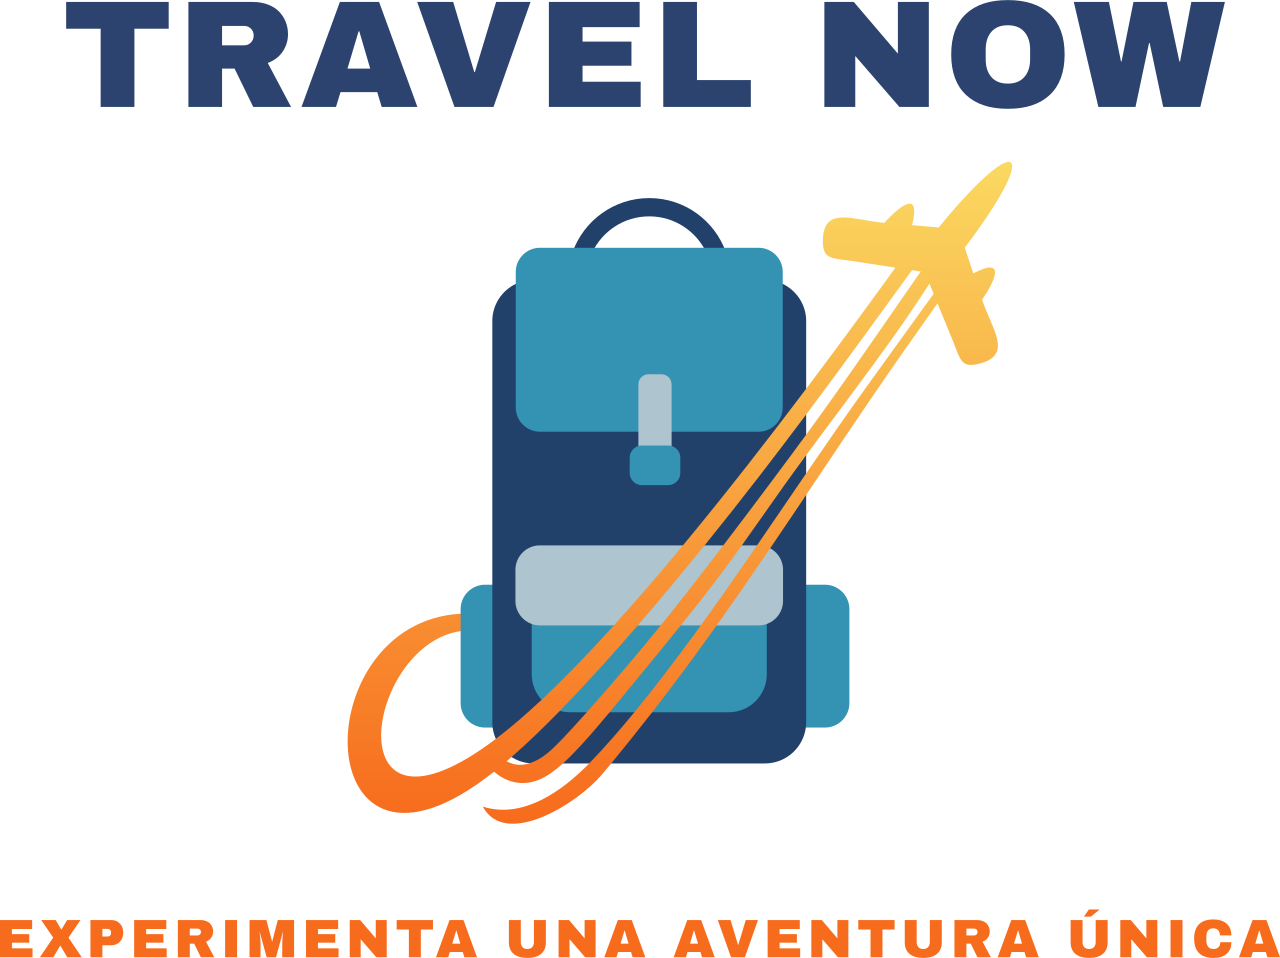 travel now's logo